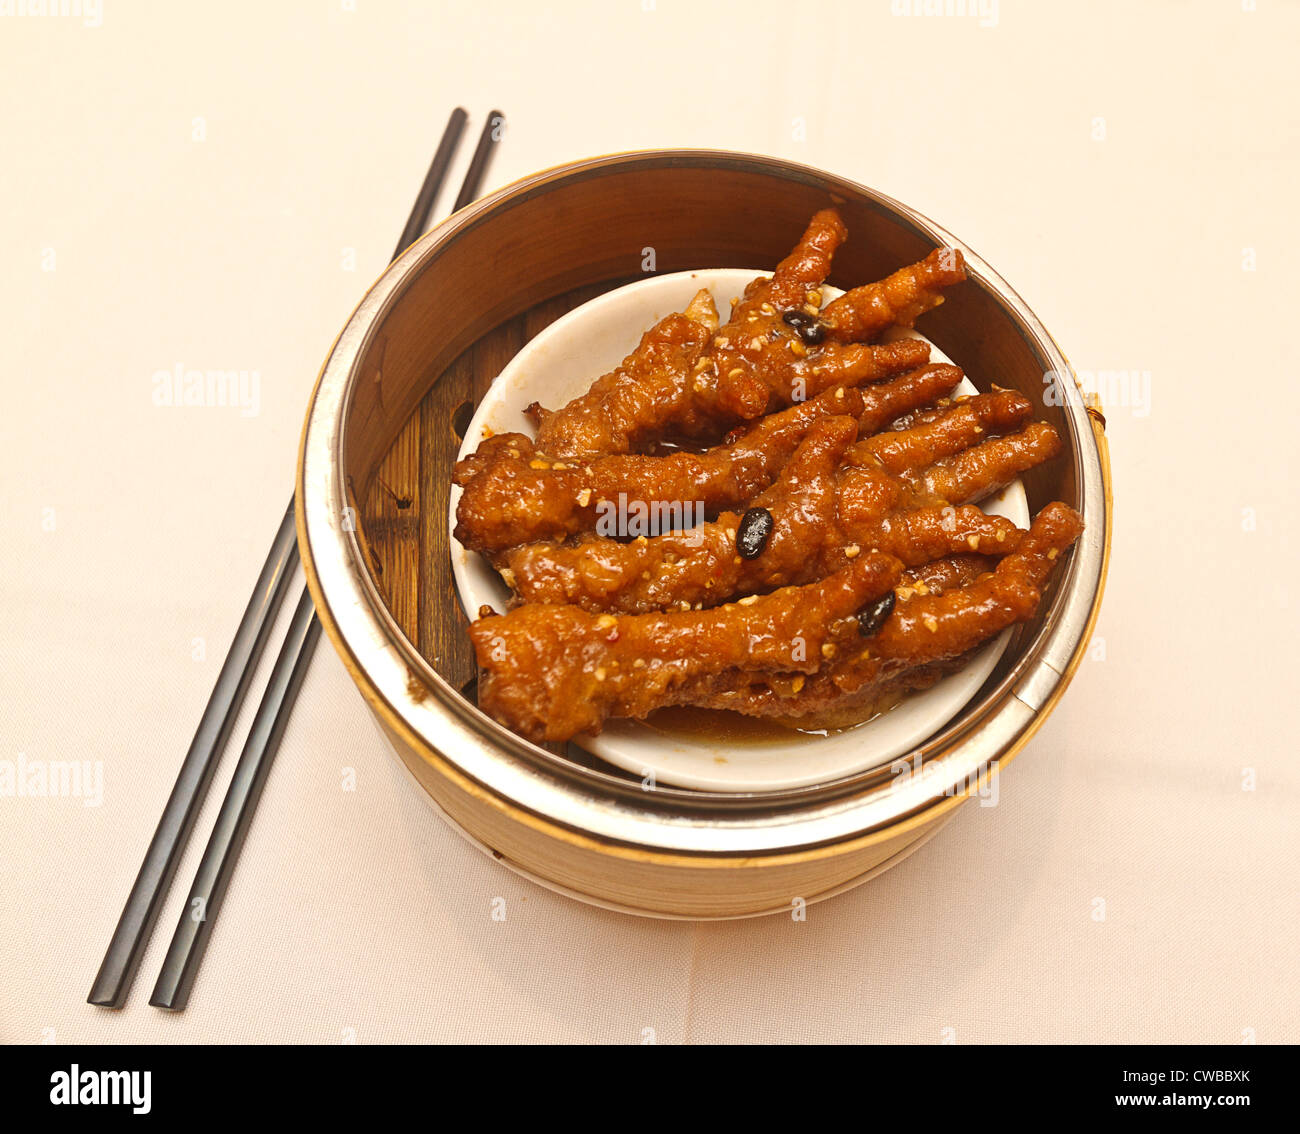 Hühnerfüße, ein beliebtes chinesisches Gericht oft serviert für Dim Sum, die chinesische Brunch. Stockfoto